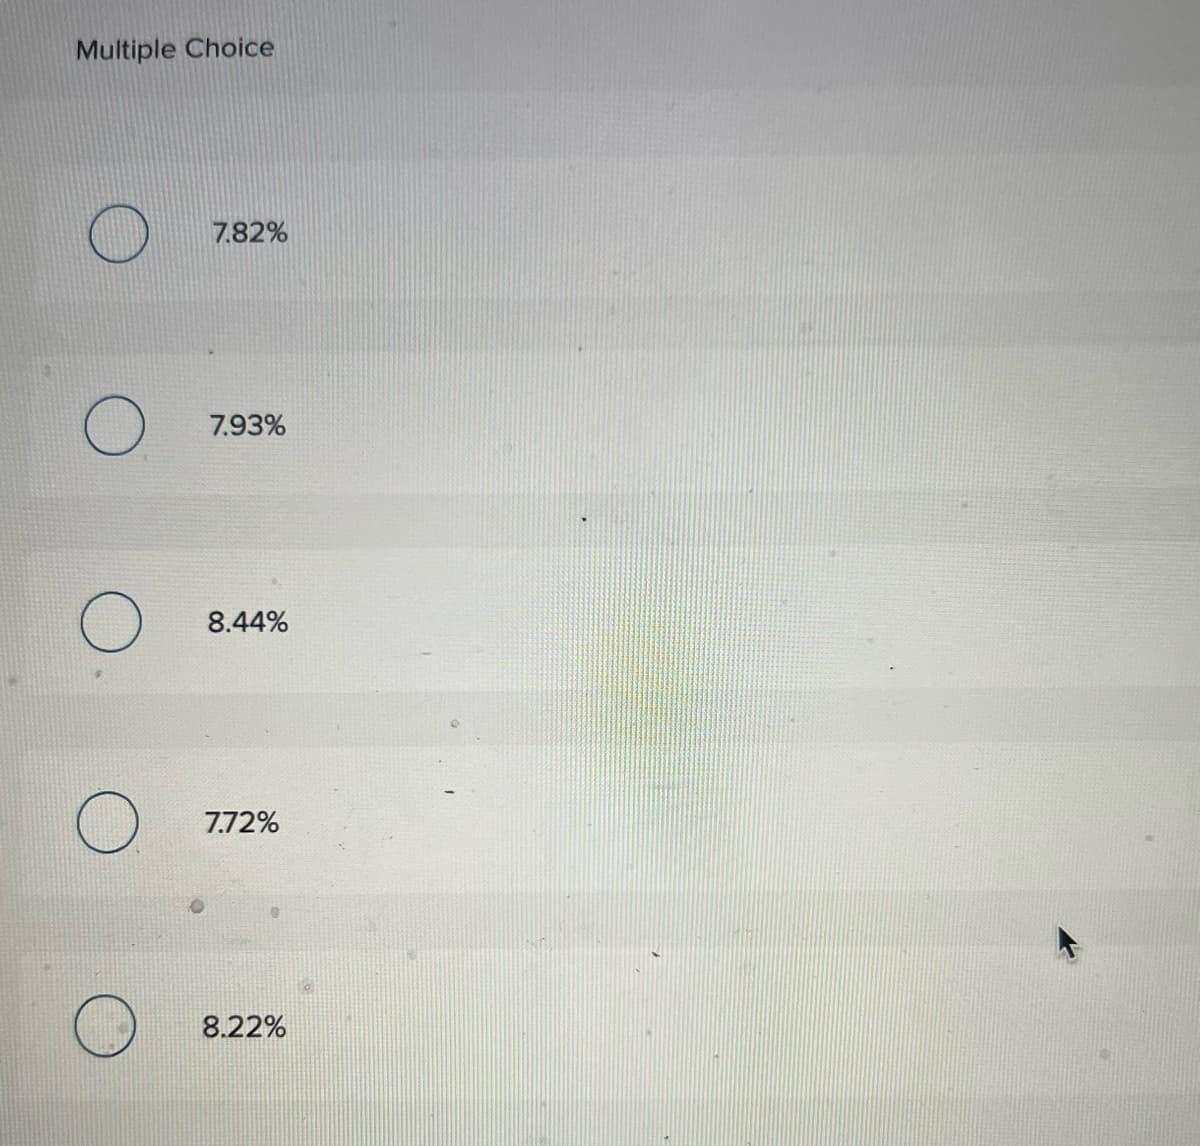 Multiple Choice
7.82%
7.93%
8.44%
7.72%
8.22%